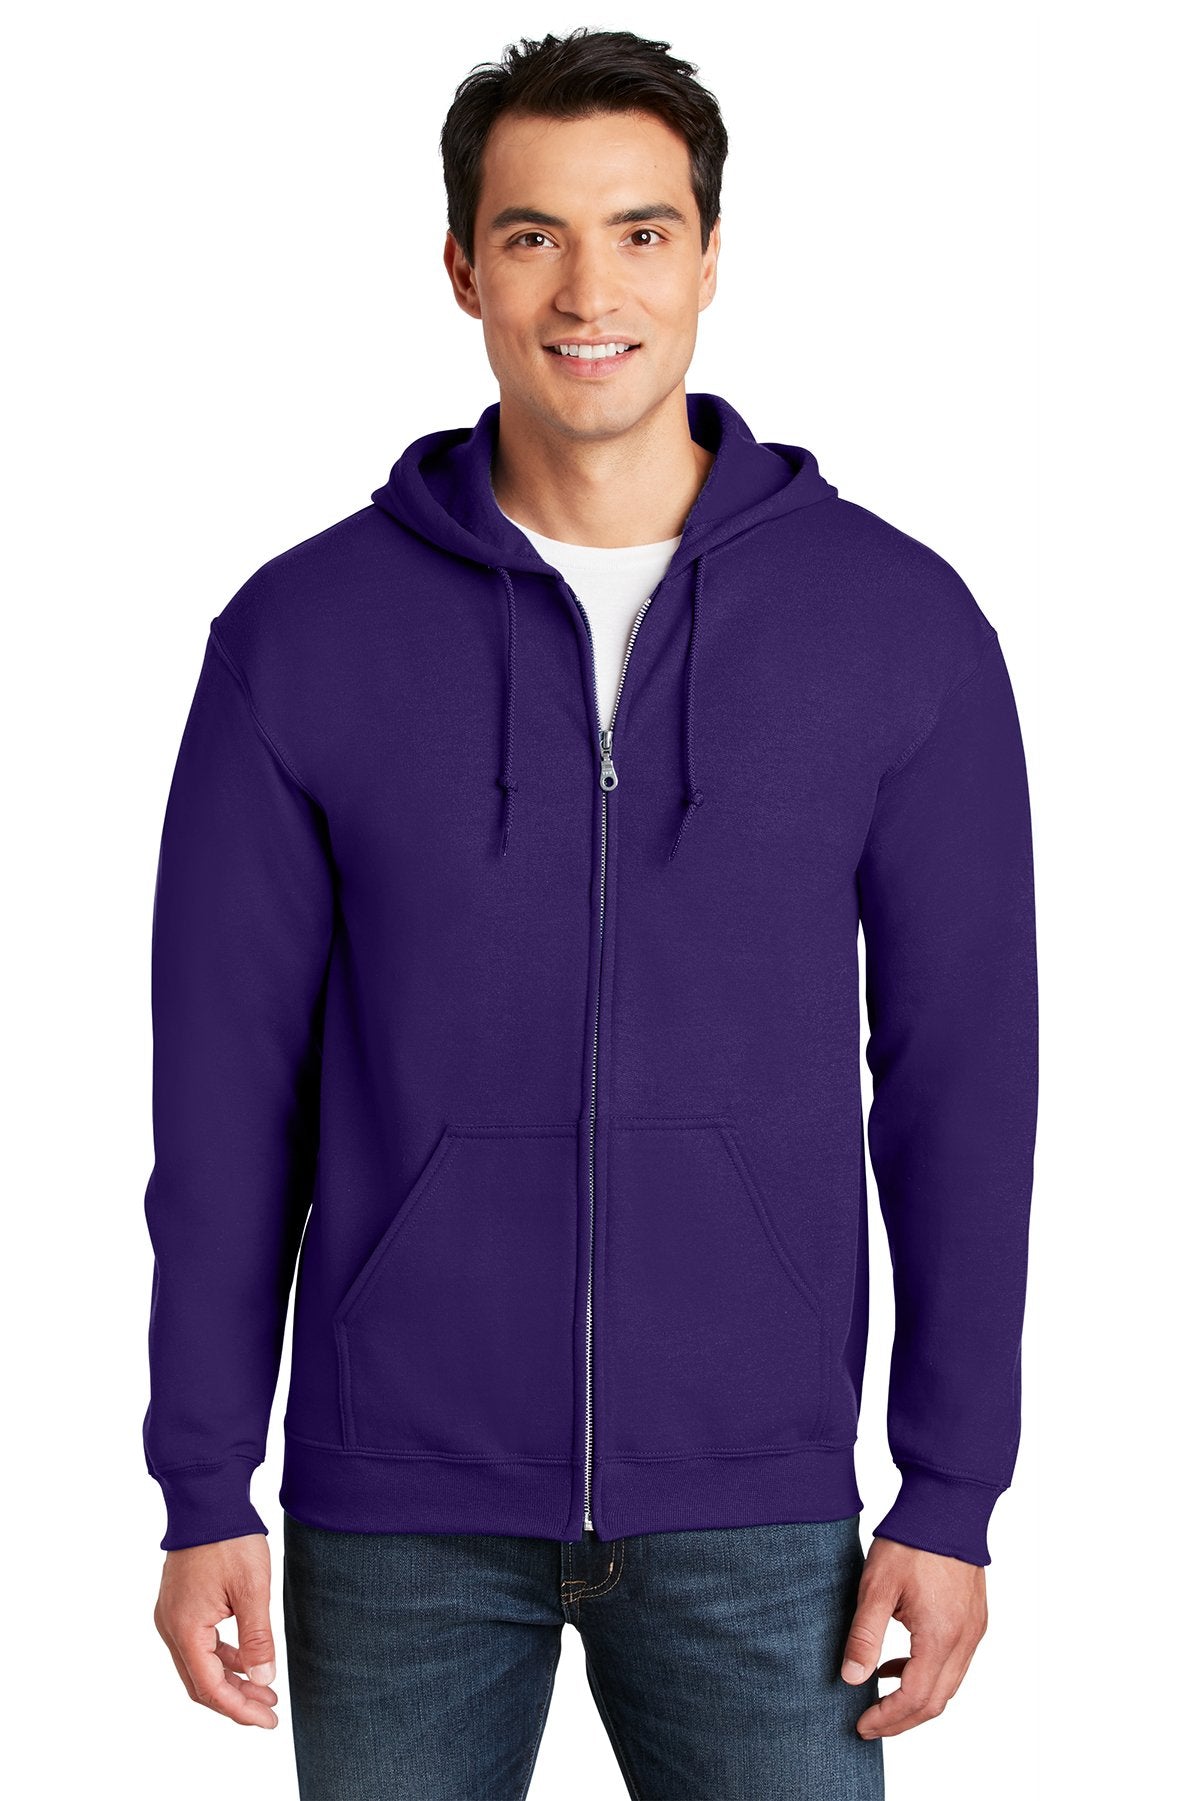 Gildan Purple 18600 polo shirt with logo embroidered